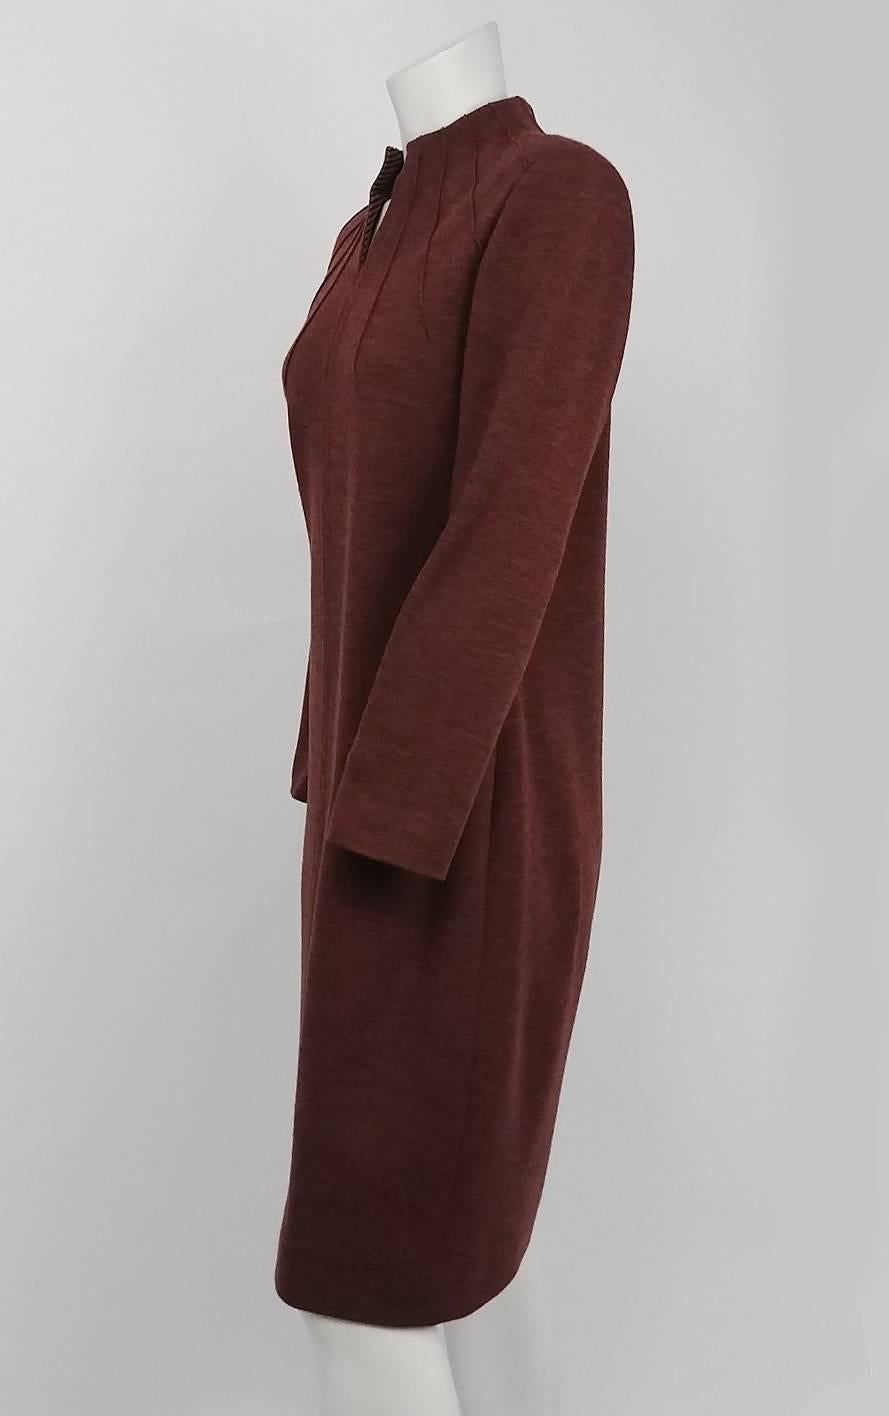 80s Carolina Herrera Knit Dress. Pin tuck collar detail. Space dyed jersey knit, striped acetate lining. 